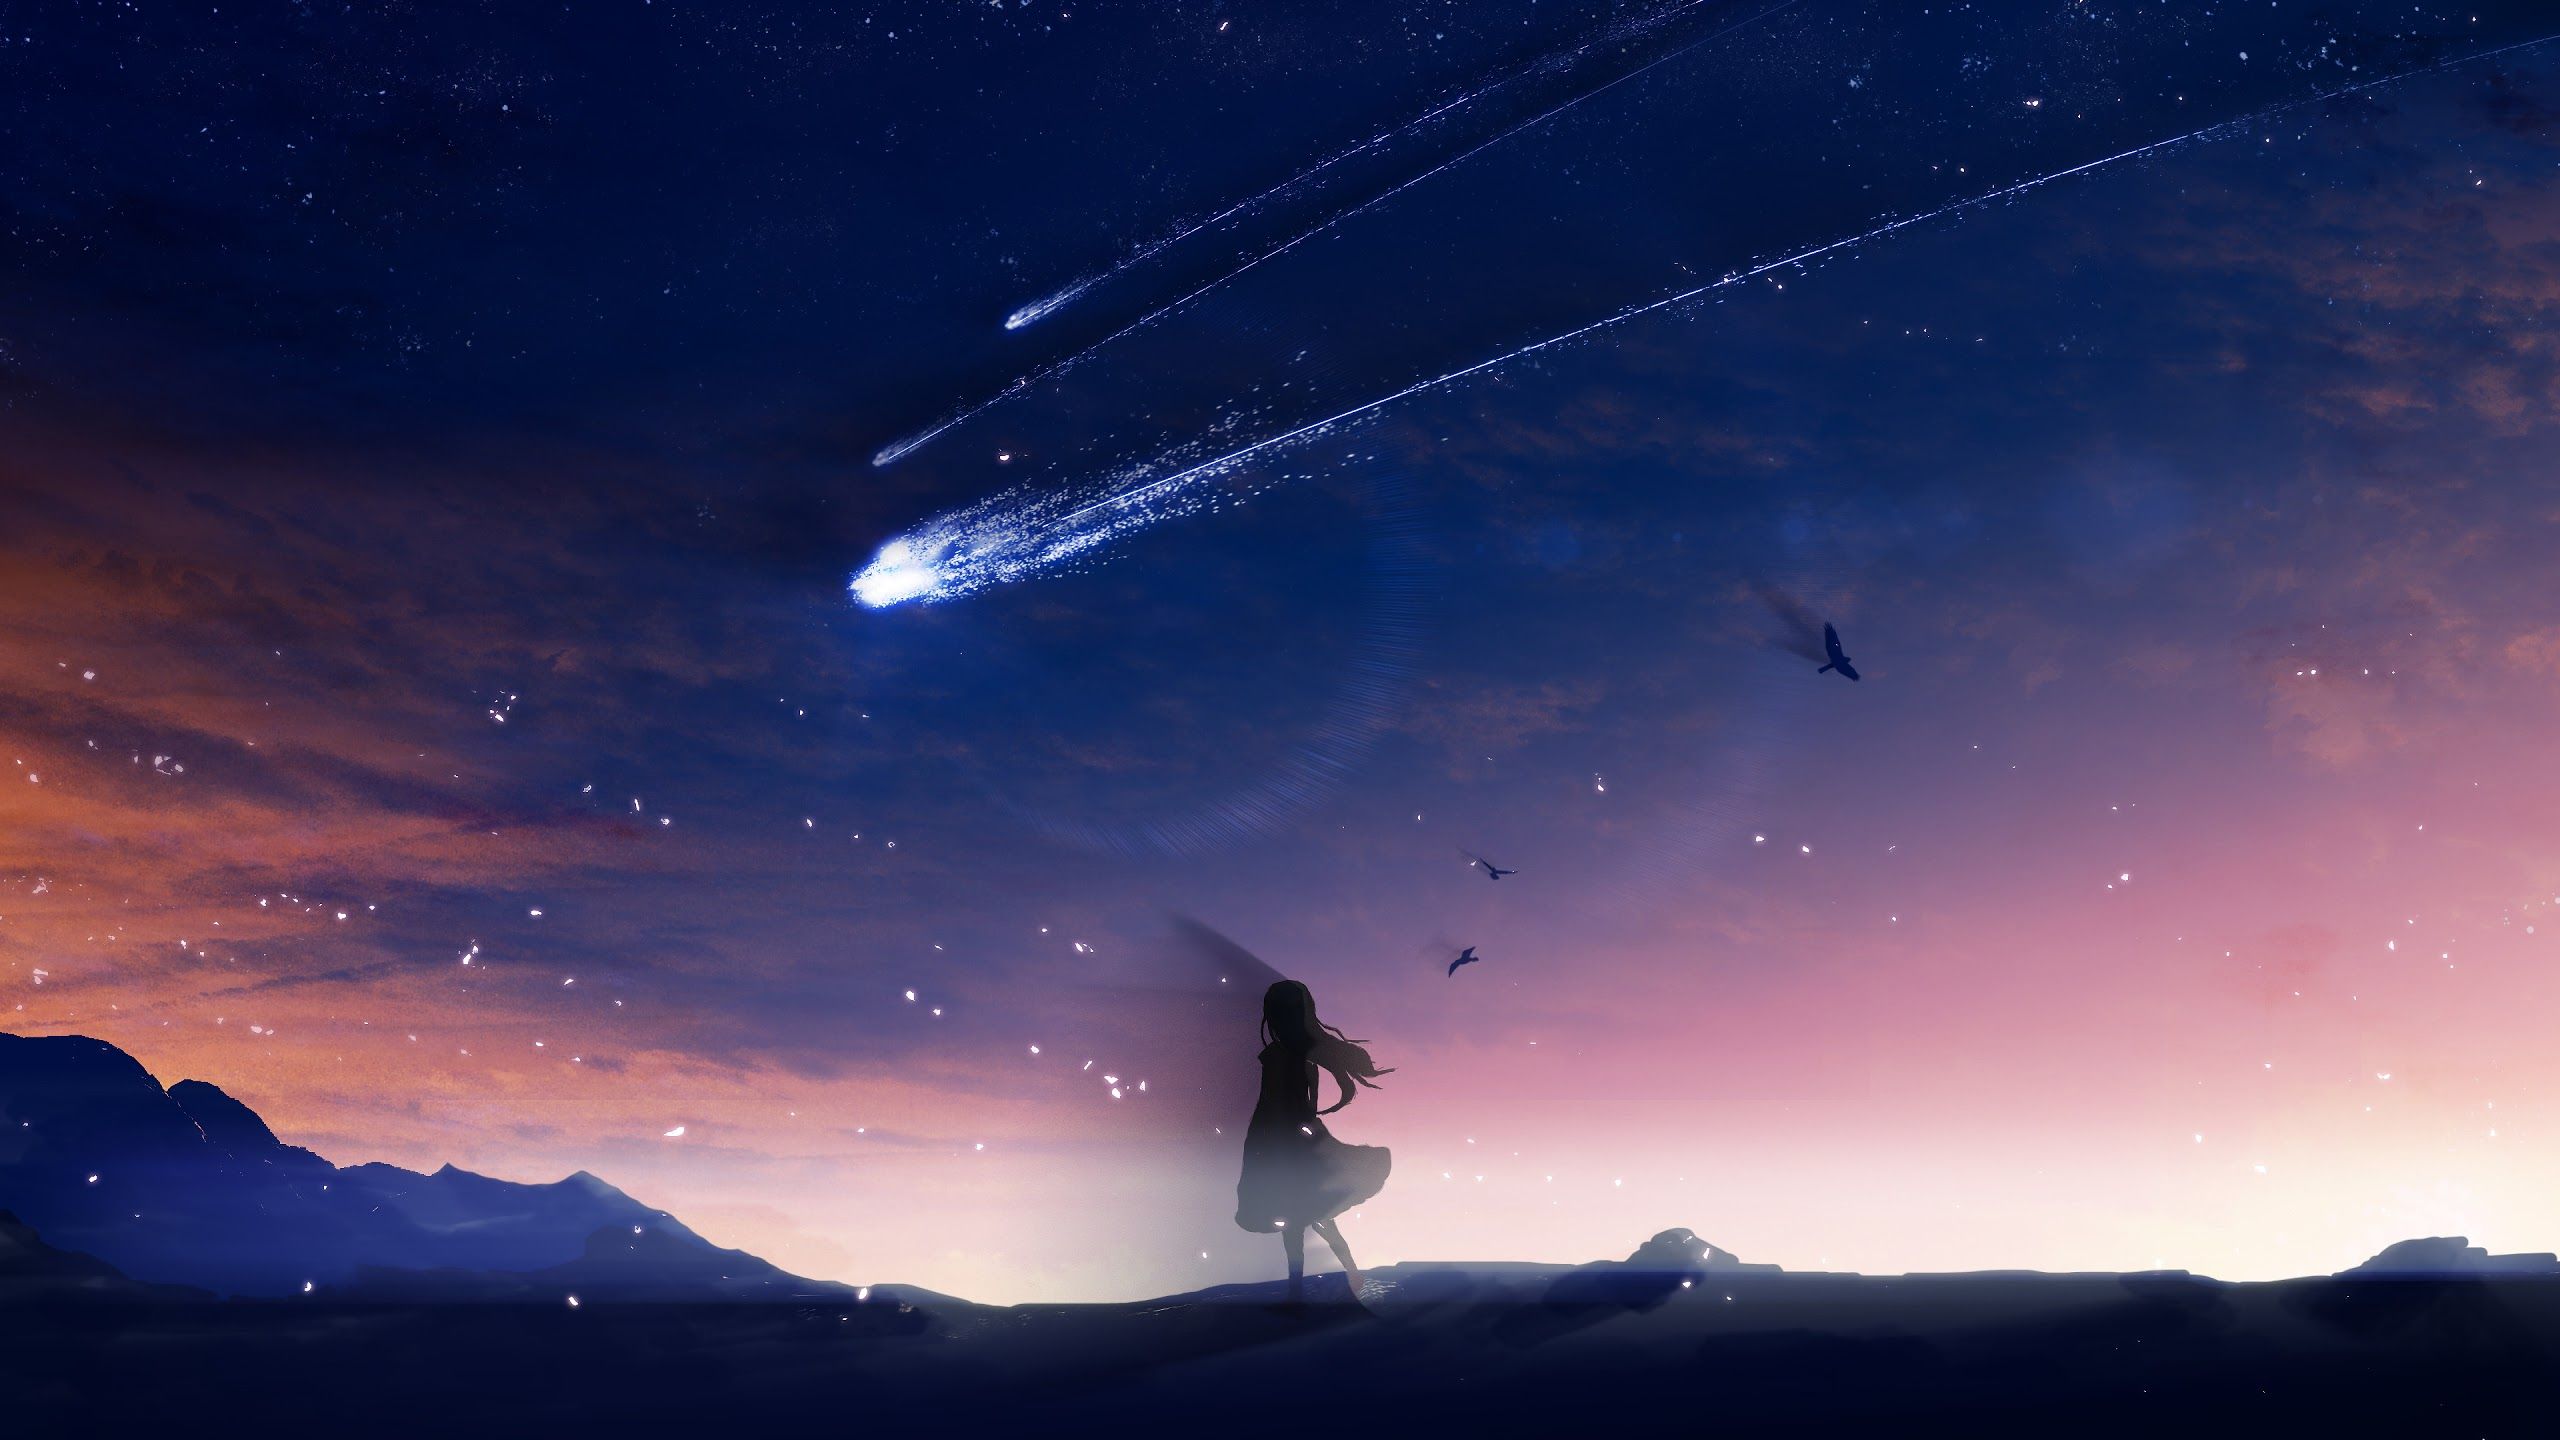 Những bức ảnh Anime Scene 4k Sky Wallpapers sẽ đưa bạn vào một thế giới hoạt hình tuyệt vời kết hợp với một bầu trời đầy ngần ấy sao trên nền tảng kịch bản tinh tế. Cùng trải nghiệm và khám phá ngay nhé!